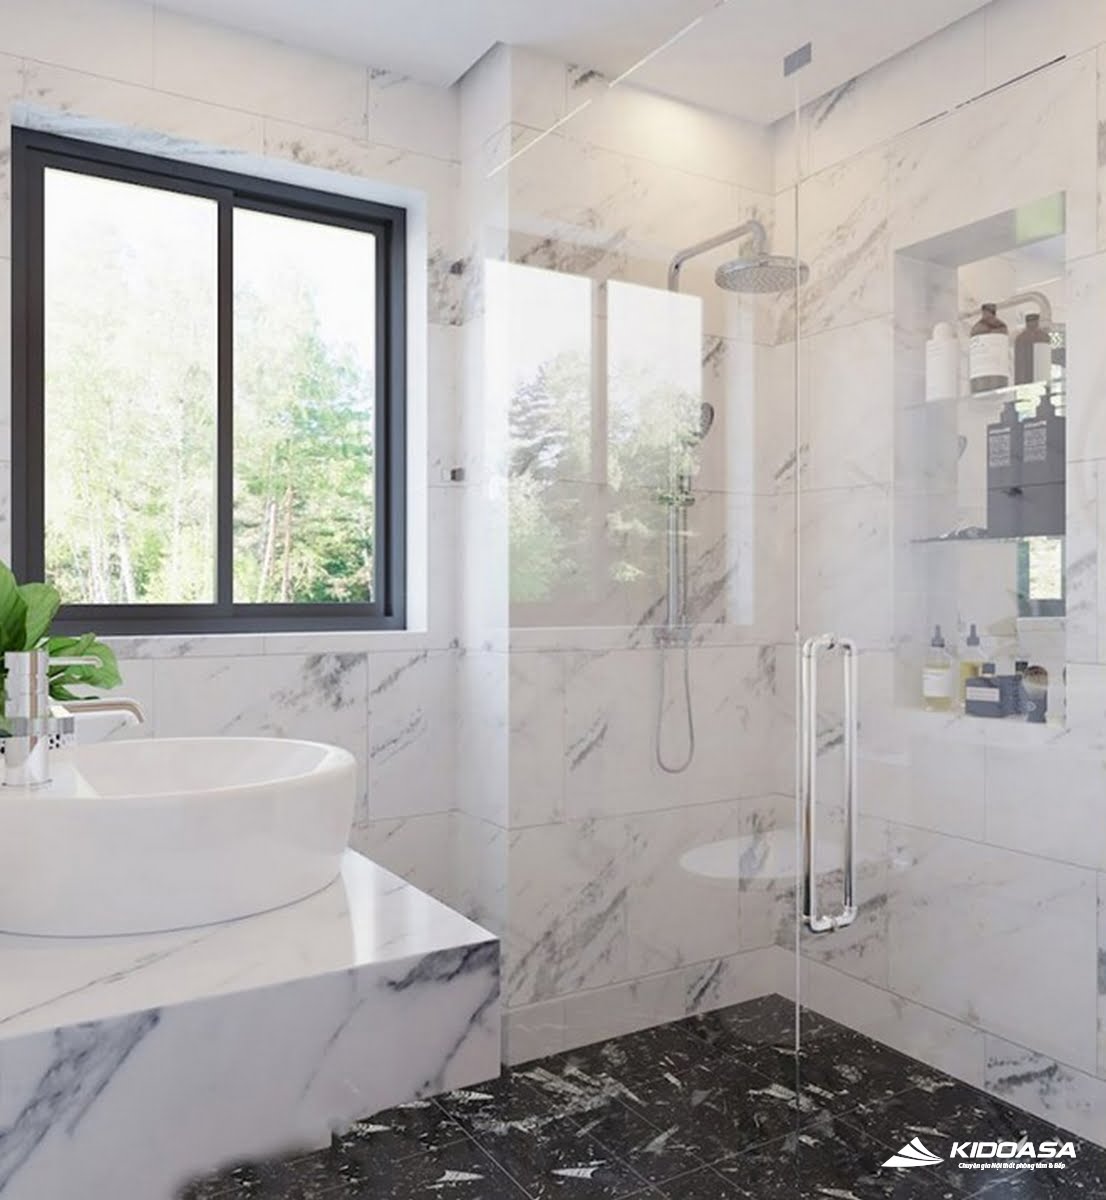 Sử dụng gạch lát kích thước lớn, sáng màu cũng là một mẹo khiến cho phòng tắm như rộng và thoáng hơn